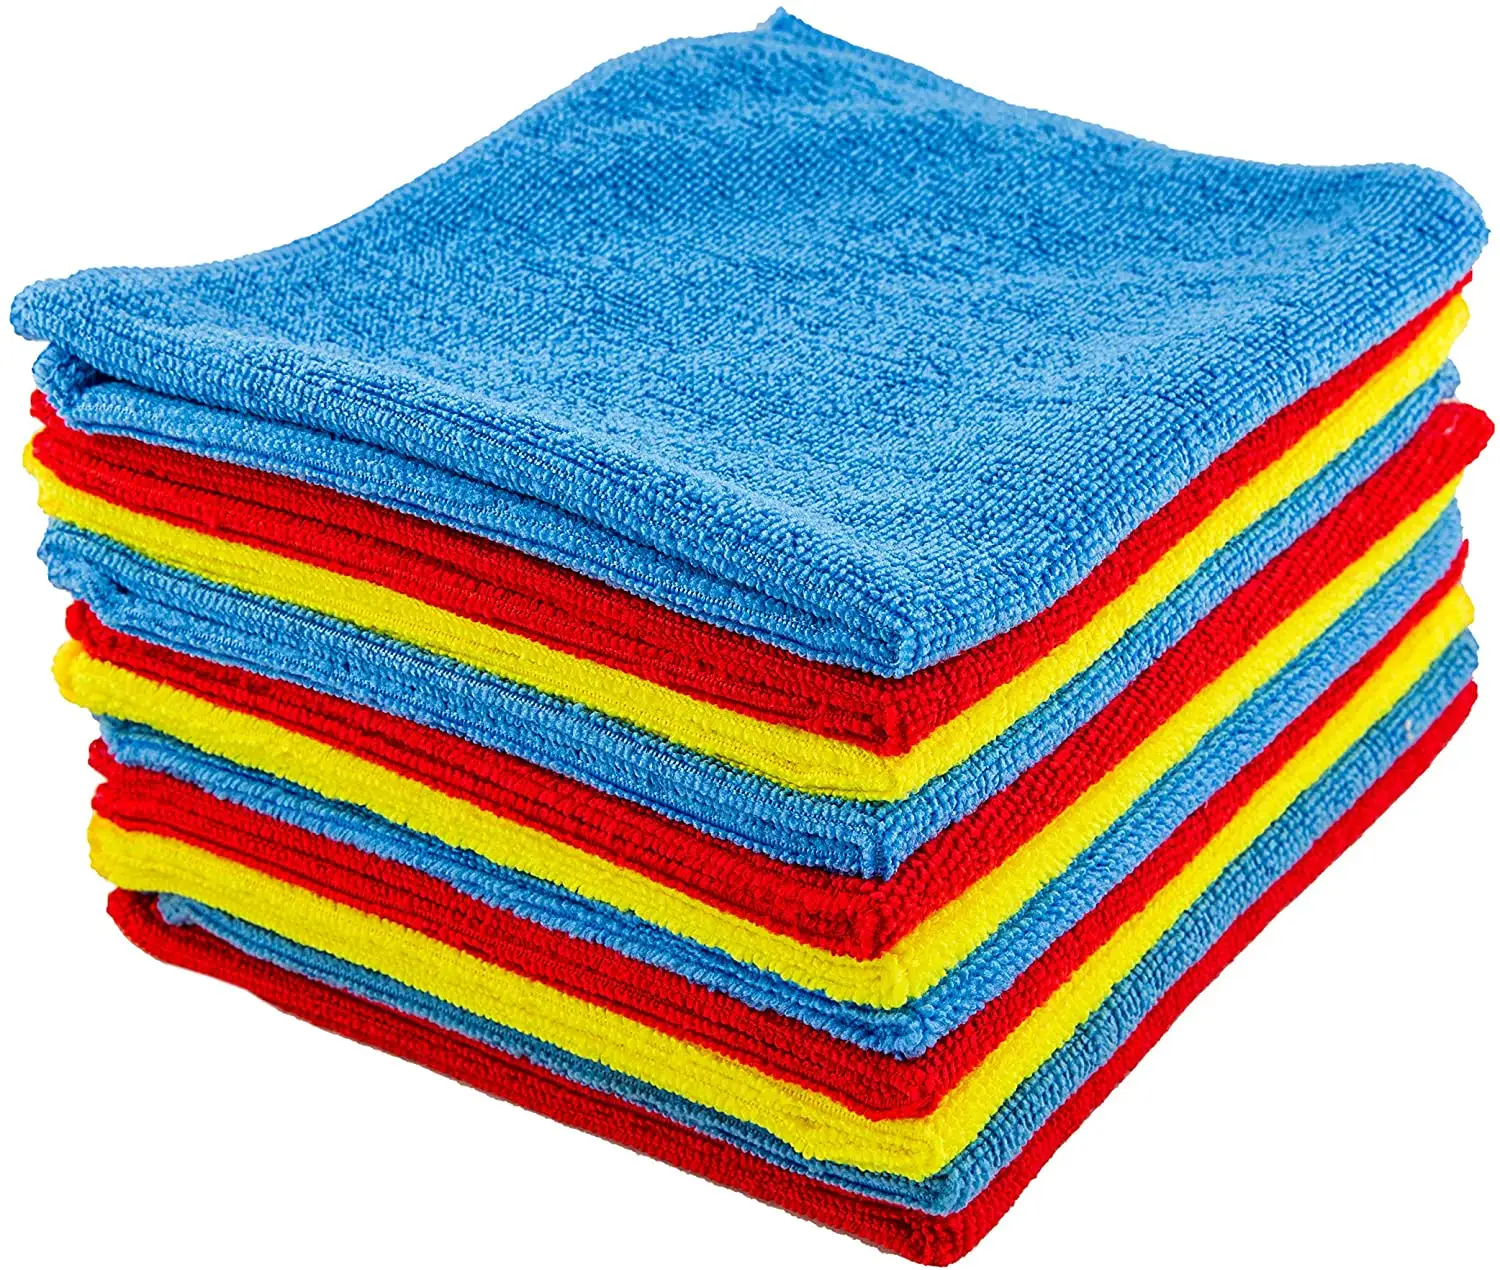 Groothandel Fabriek Prijs Microfiber Keuken Schoonmaak Afwas Handdoek Schoonmaak Handdoek Keuken Handdoek